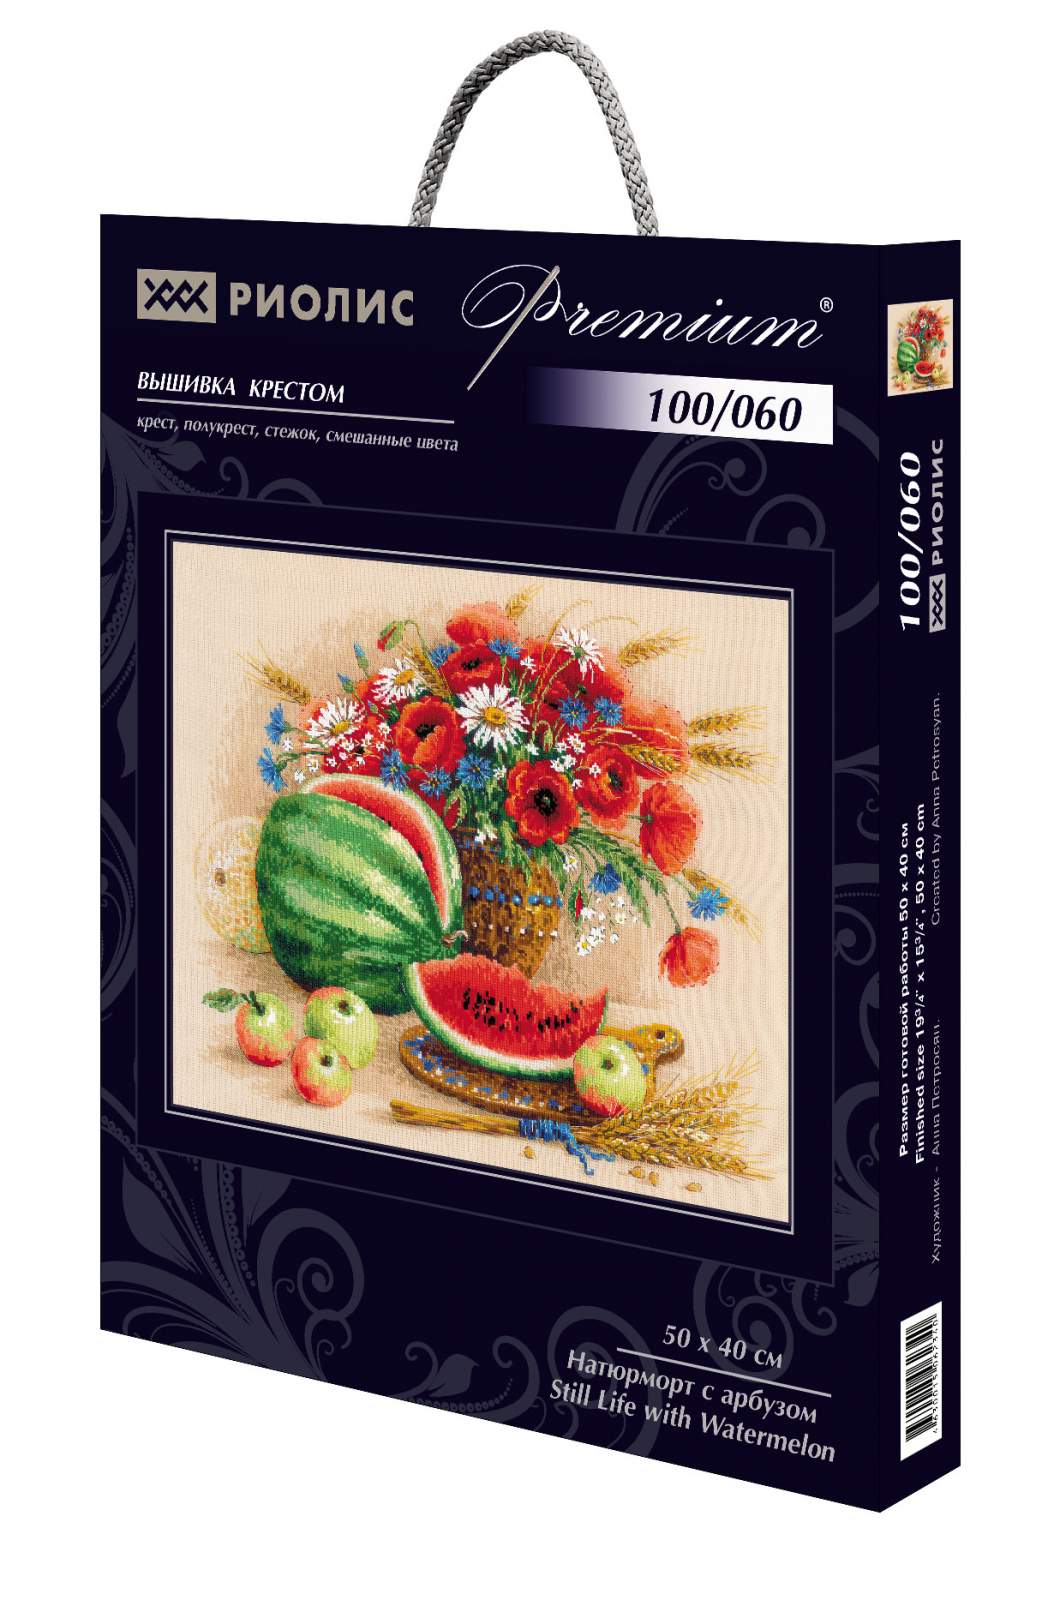 Натюрморт с персиком, набор для вышивания, арт. Риолис | Купить онлайн на taimyr-expo.ru